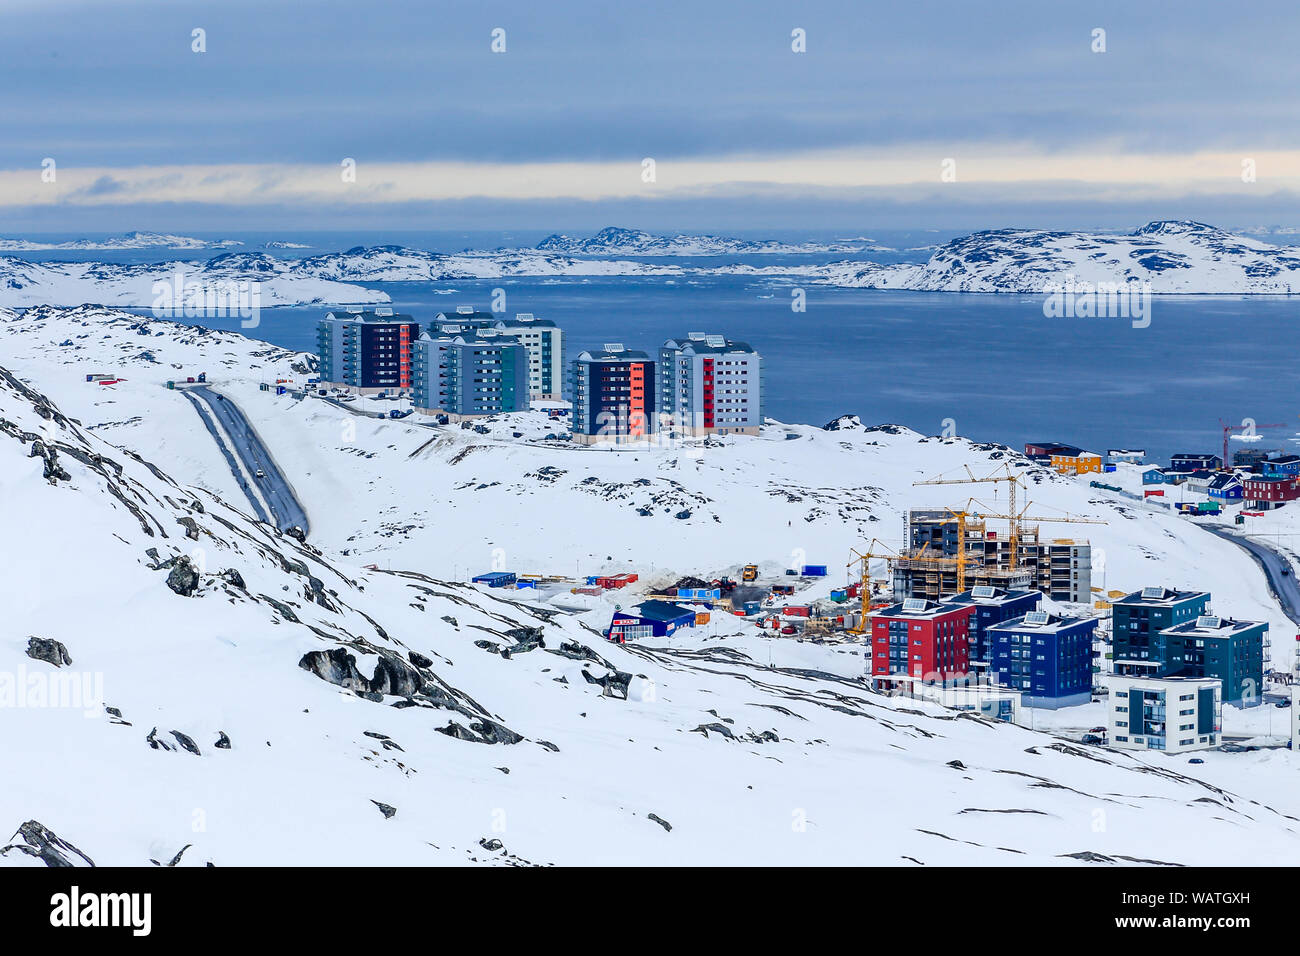 Strade e costruzione di blocchi di capitale della Groenlandia Nuuk città al fiordo, Vista dalle colline di neve, Groenlandia Foto Stock